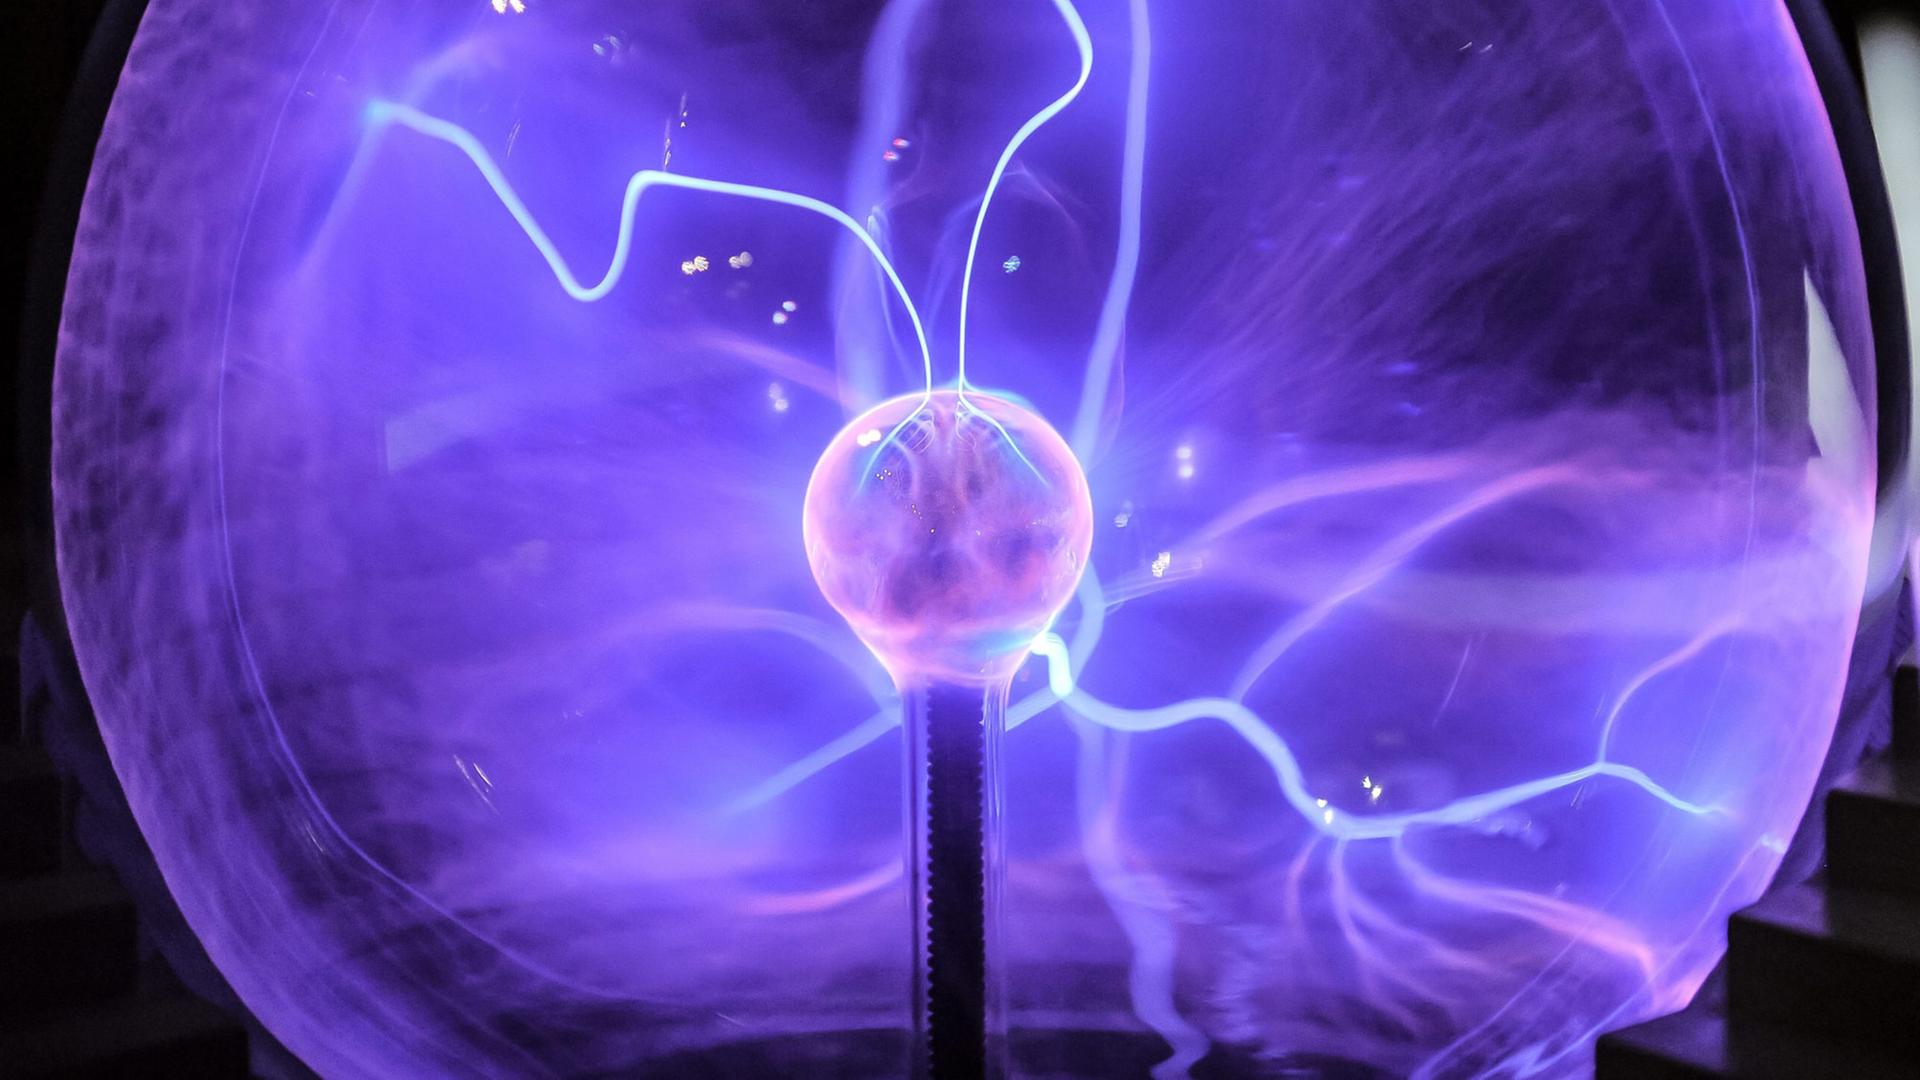 Multimedia-Spektakel "Masters Duel", das die Rivalität der beiden außergewöhnlichen Wissenschaftler Nikola Tesla und Thomas Edison zeigen soll. (Juli 2015 in Warschau, Polen)